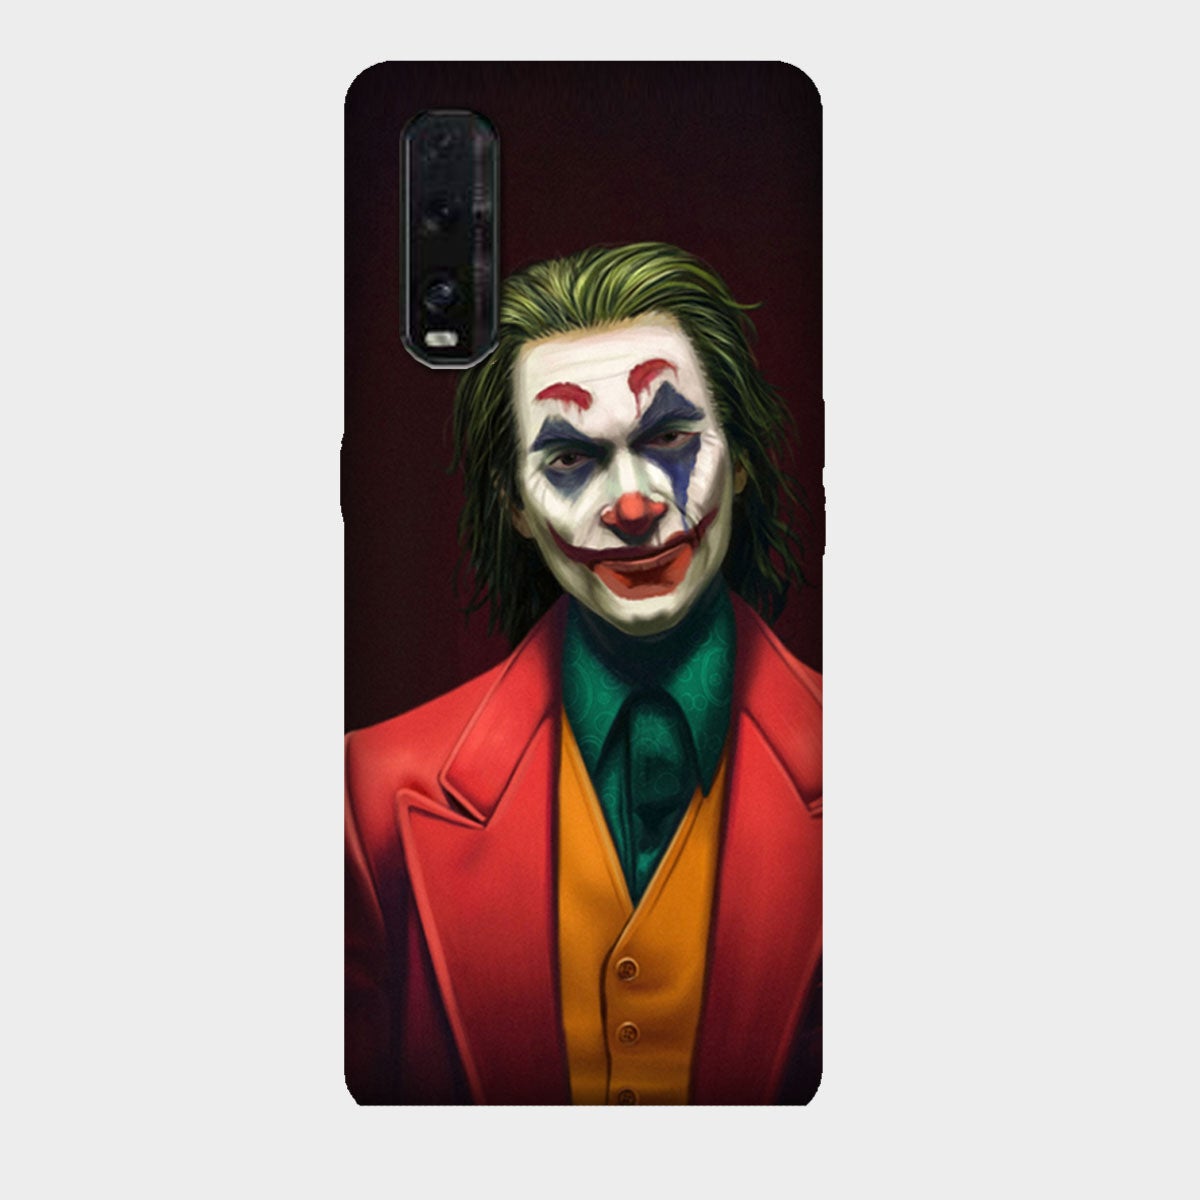 The Joker - Mobile Phone Cover - Hard Case